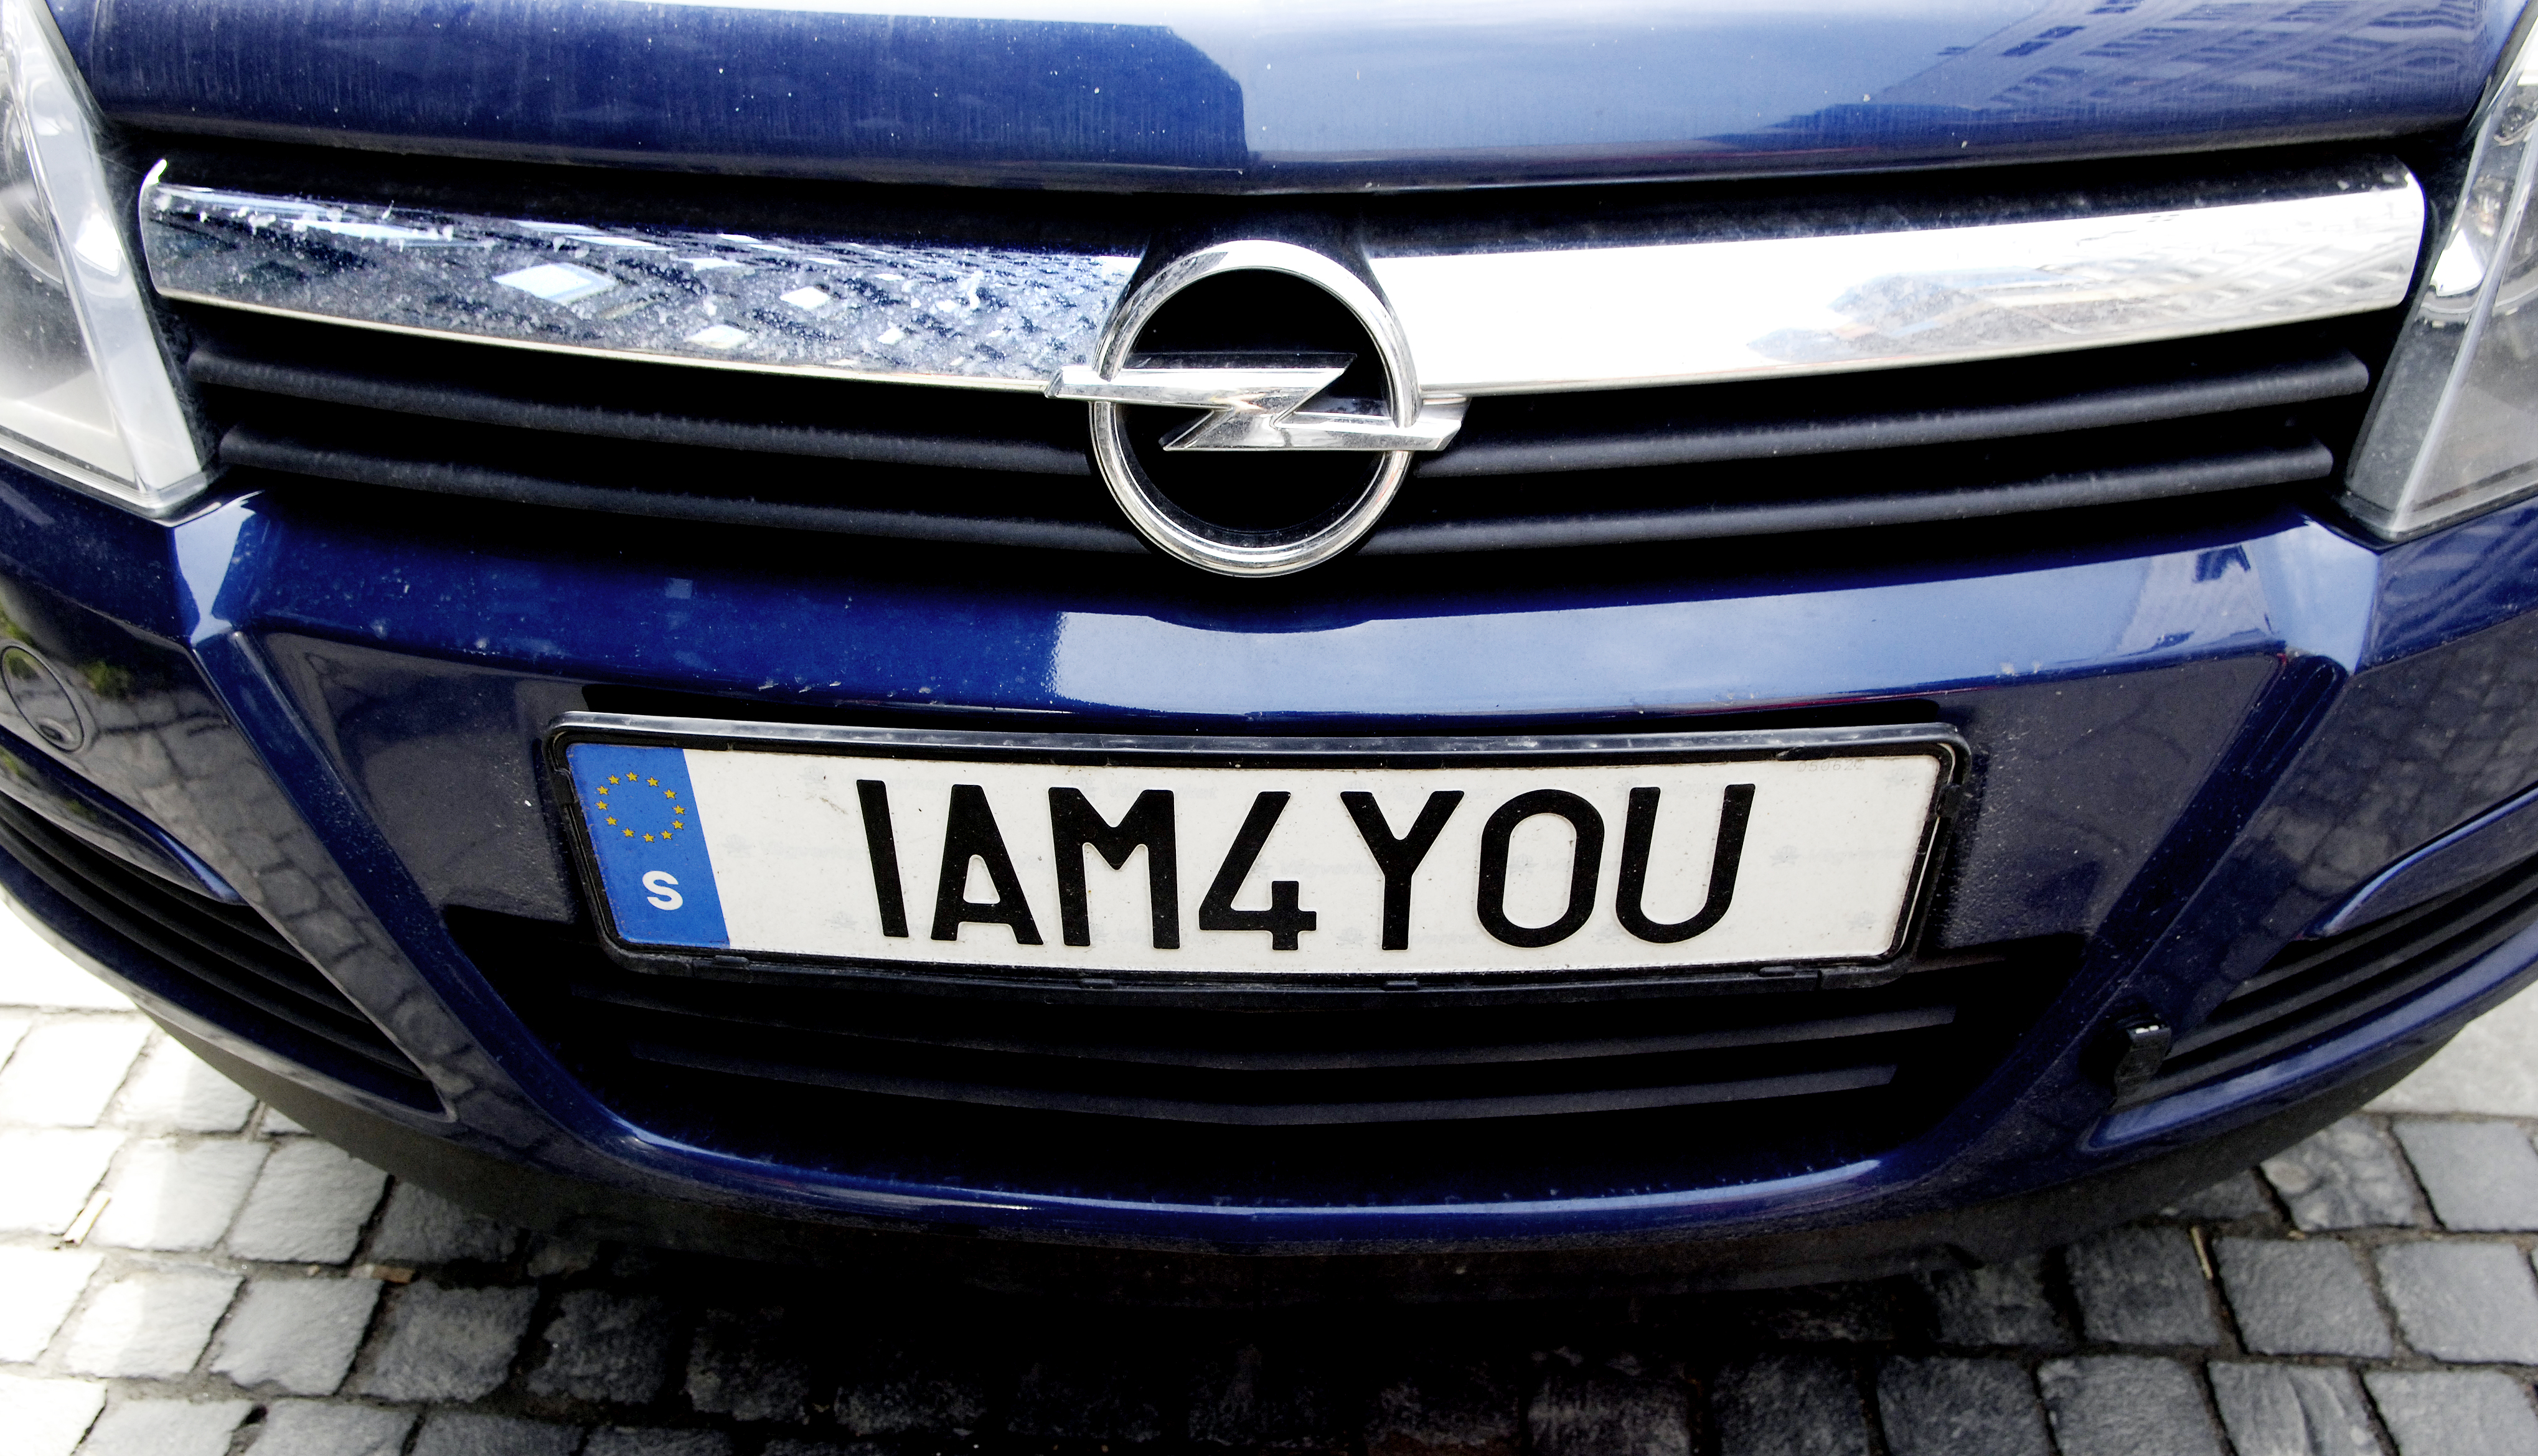 Transportstyrelsen nekar en man i Stockholm att ha WTF på bilskylten. IAM4YOU går dock bra för Transportstyrelsen.